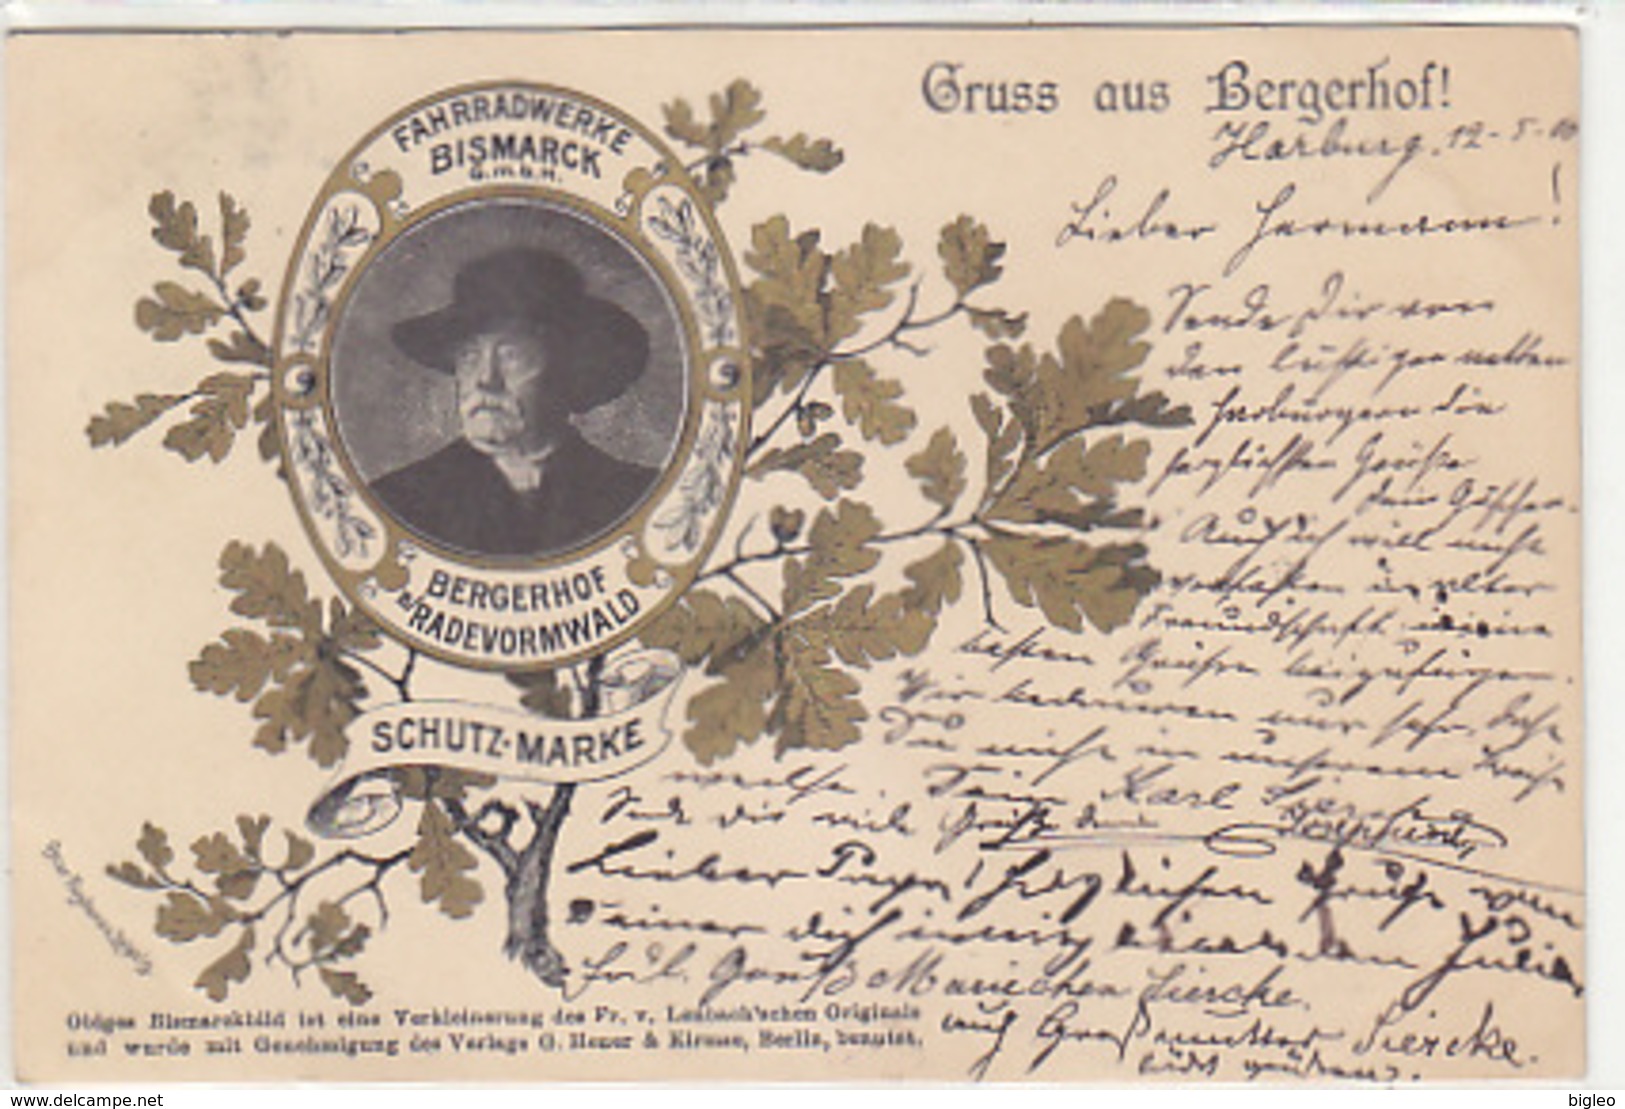 Gruss Aus Bergerhof - Fahrradwerke Bismarck GmbH - 1900    (A-92-180613) - Advertising